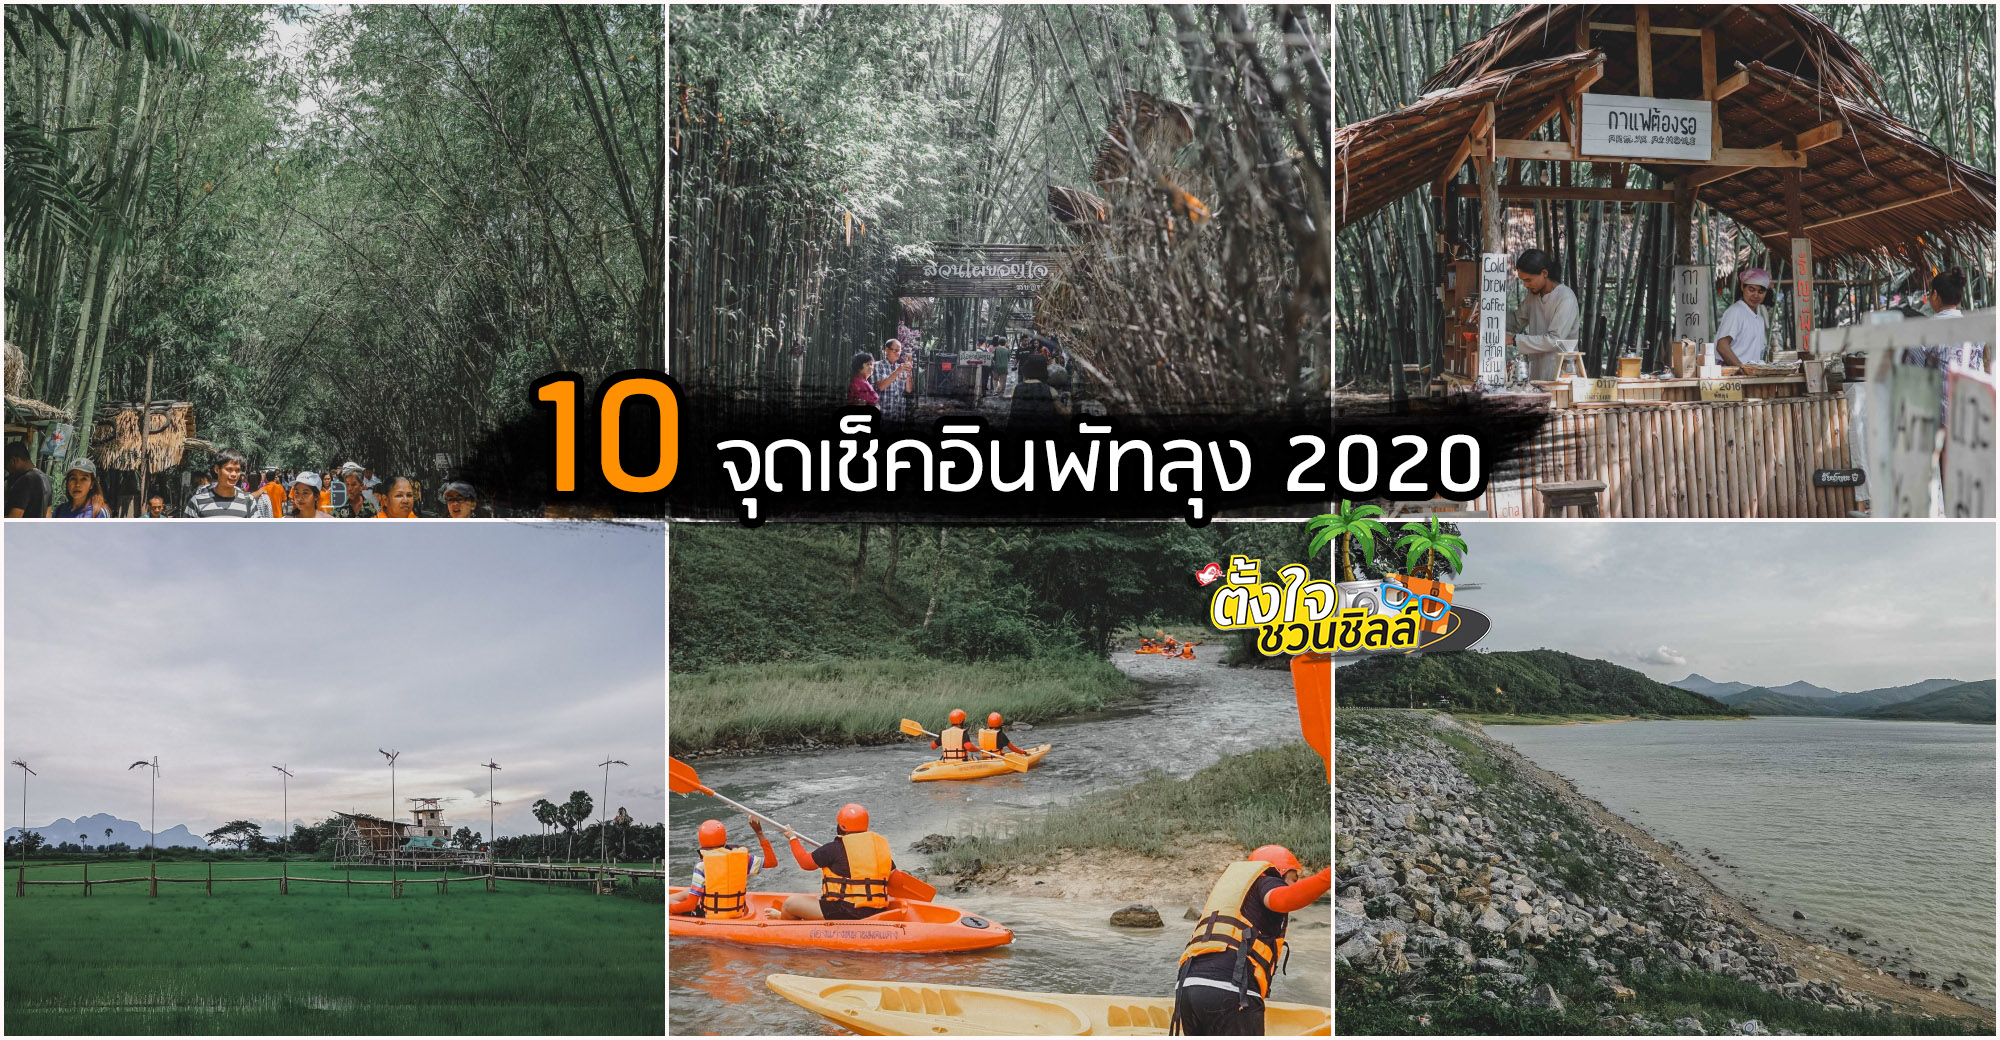 10 จุดเช็คอินพัทลุง 2020 รวมจุดกิน เที่ยว ธรรมชาติ ป่าเขา วิวหลักล้าน